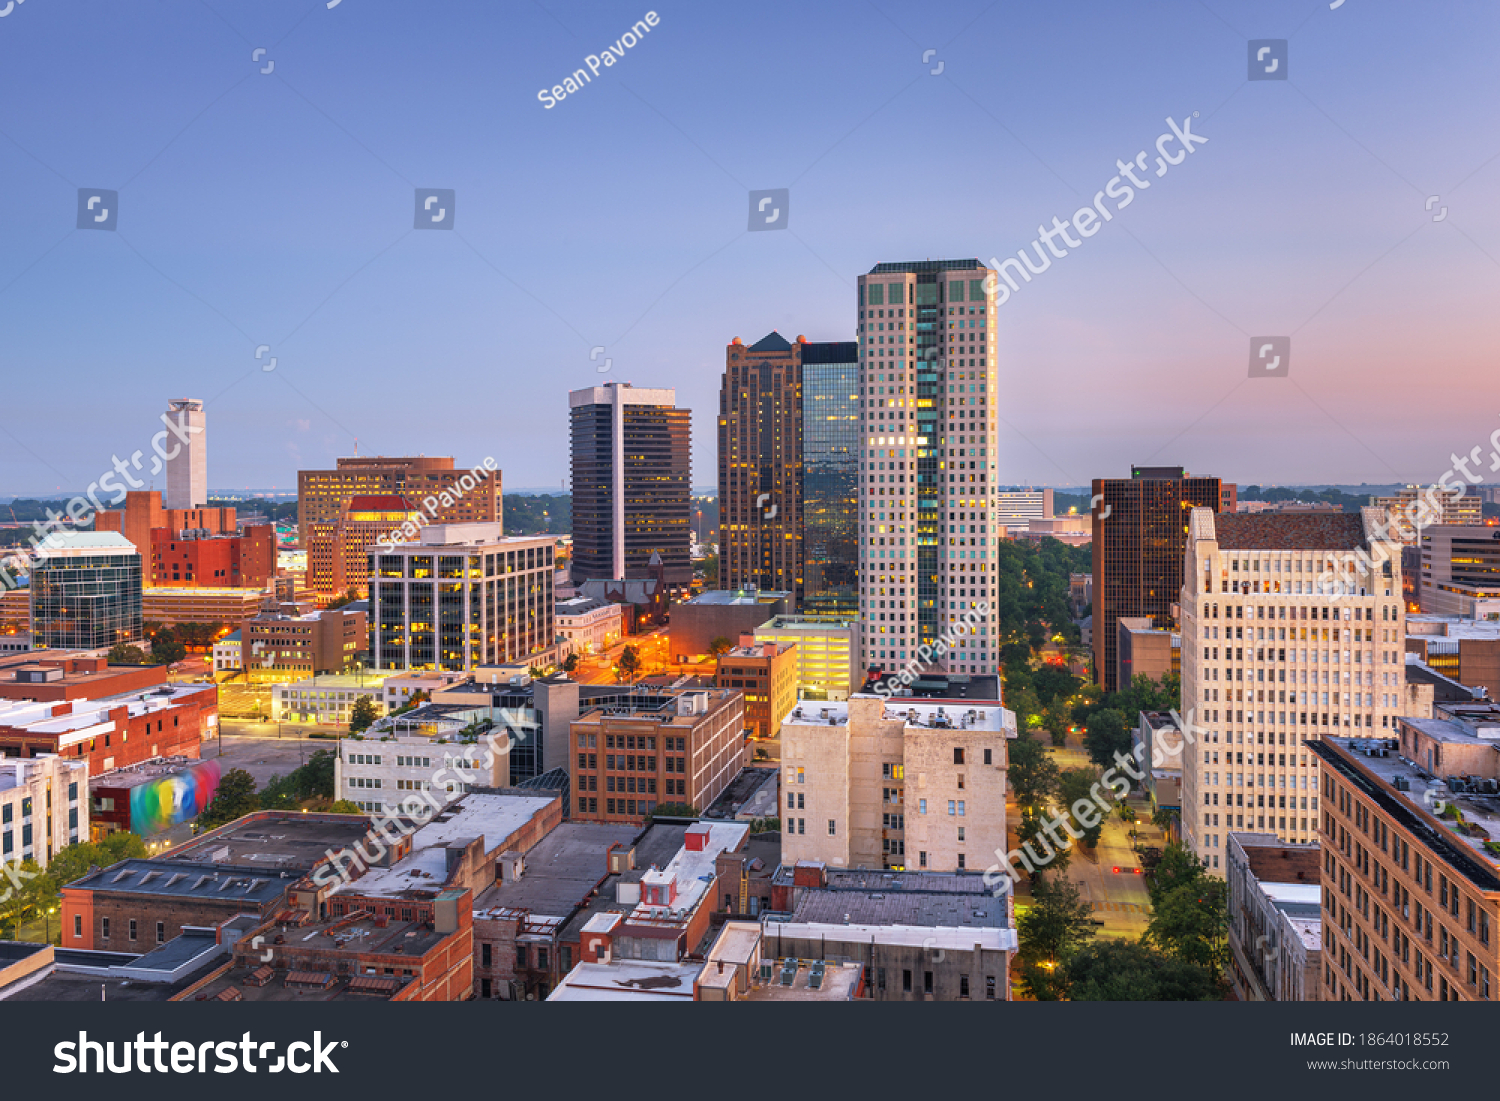 Birmingham Alabama Usa Downtown City Skyline Stock Photo 1864018552